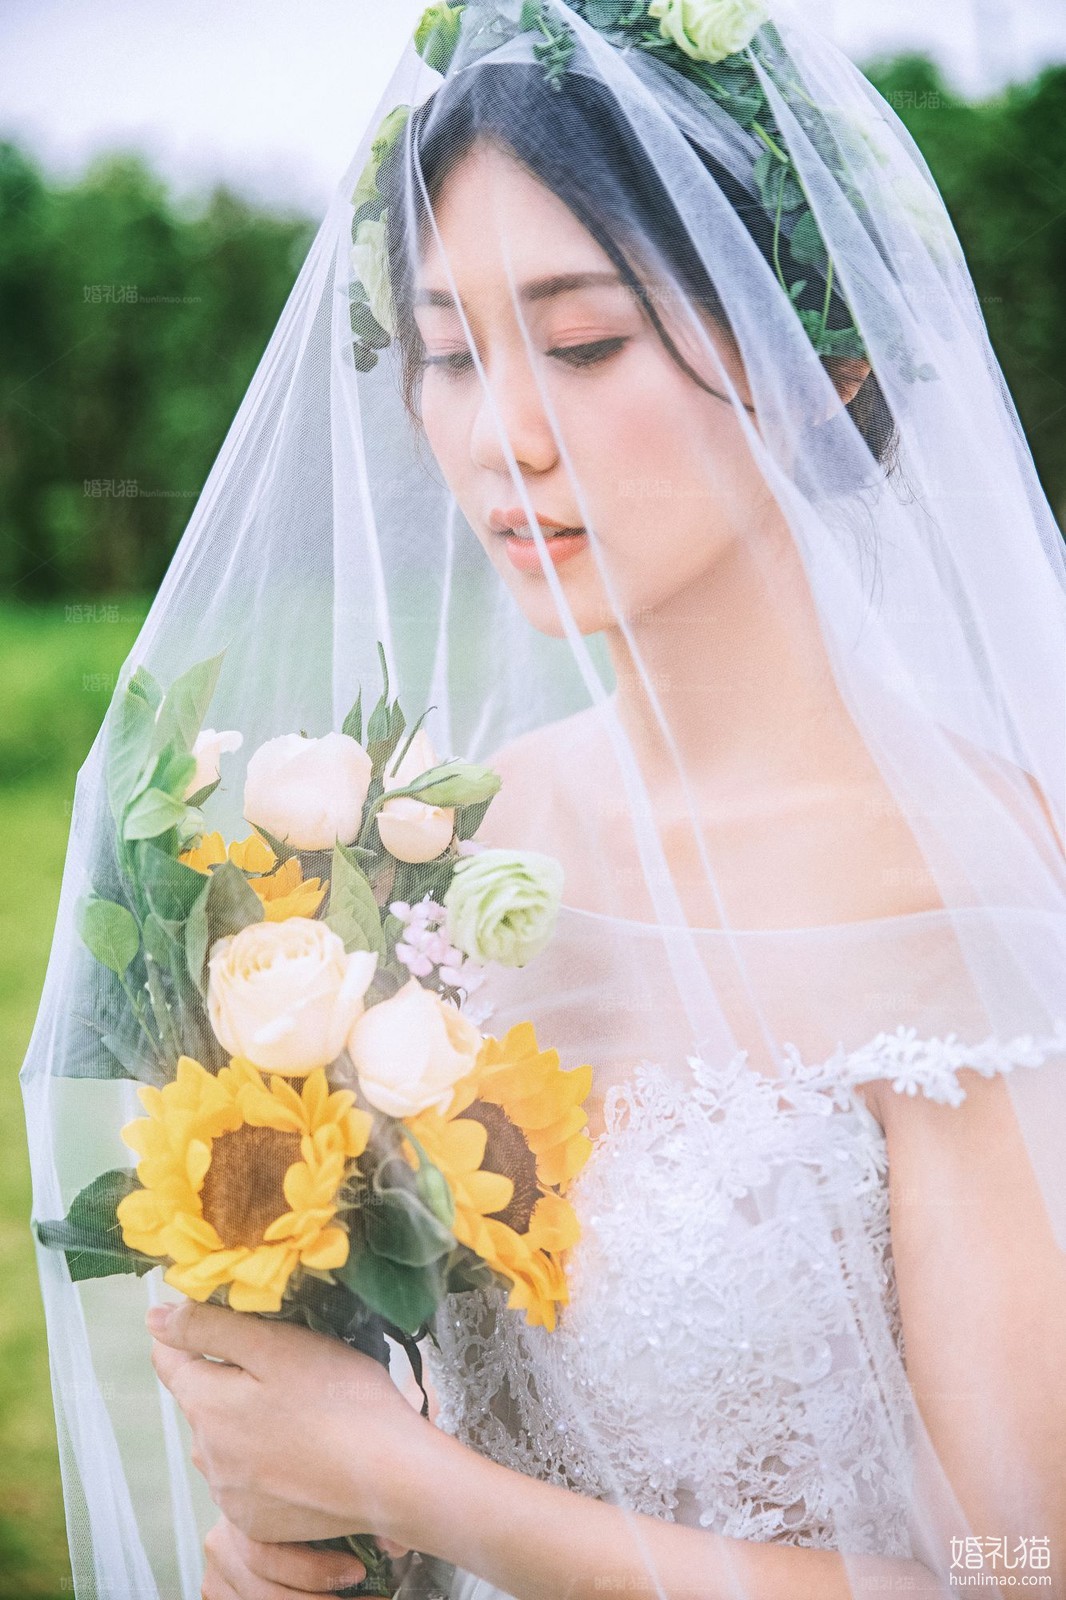 2019年7月广州婚纱照,,清远婚纱照,婚纱照图片